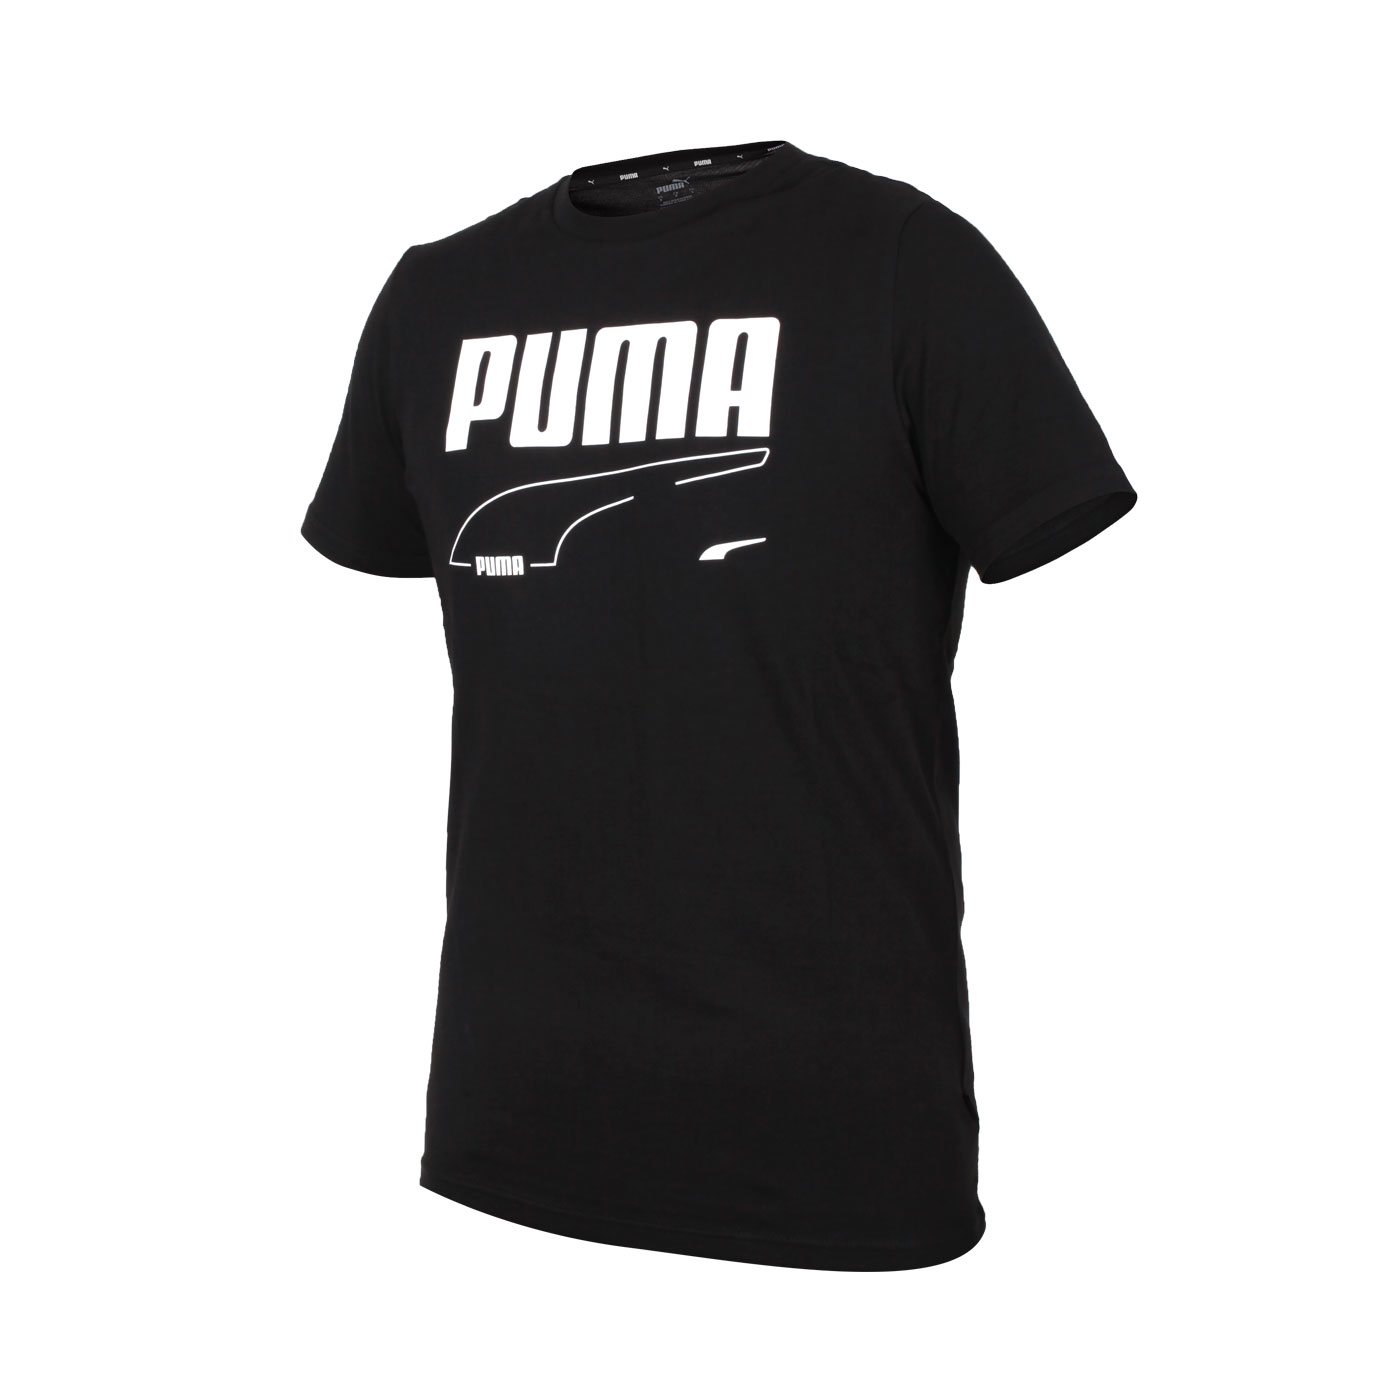 PUMA 男款短袖T恤 58573801 - 黑白